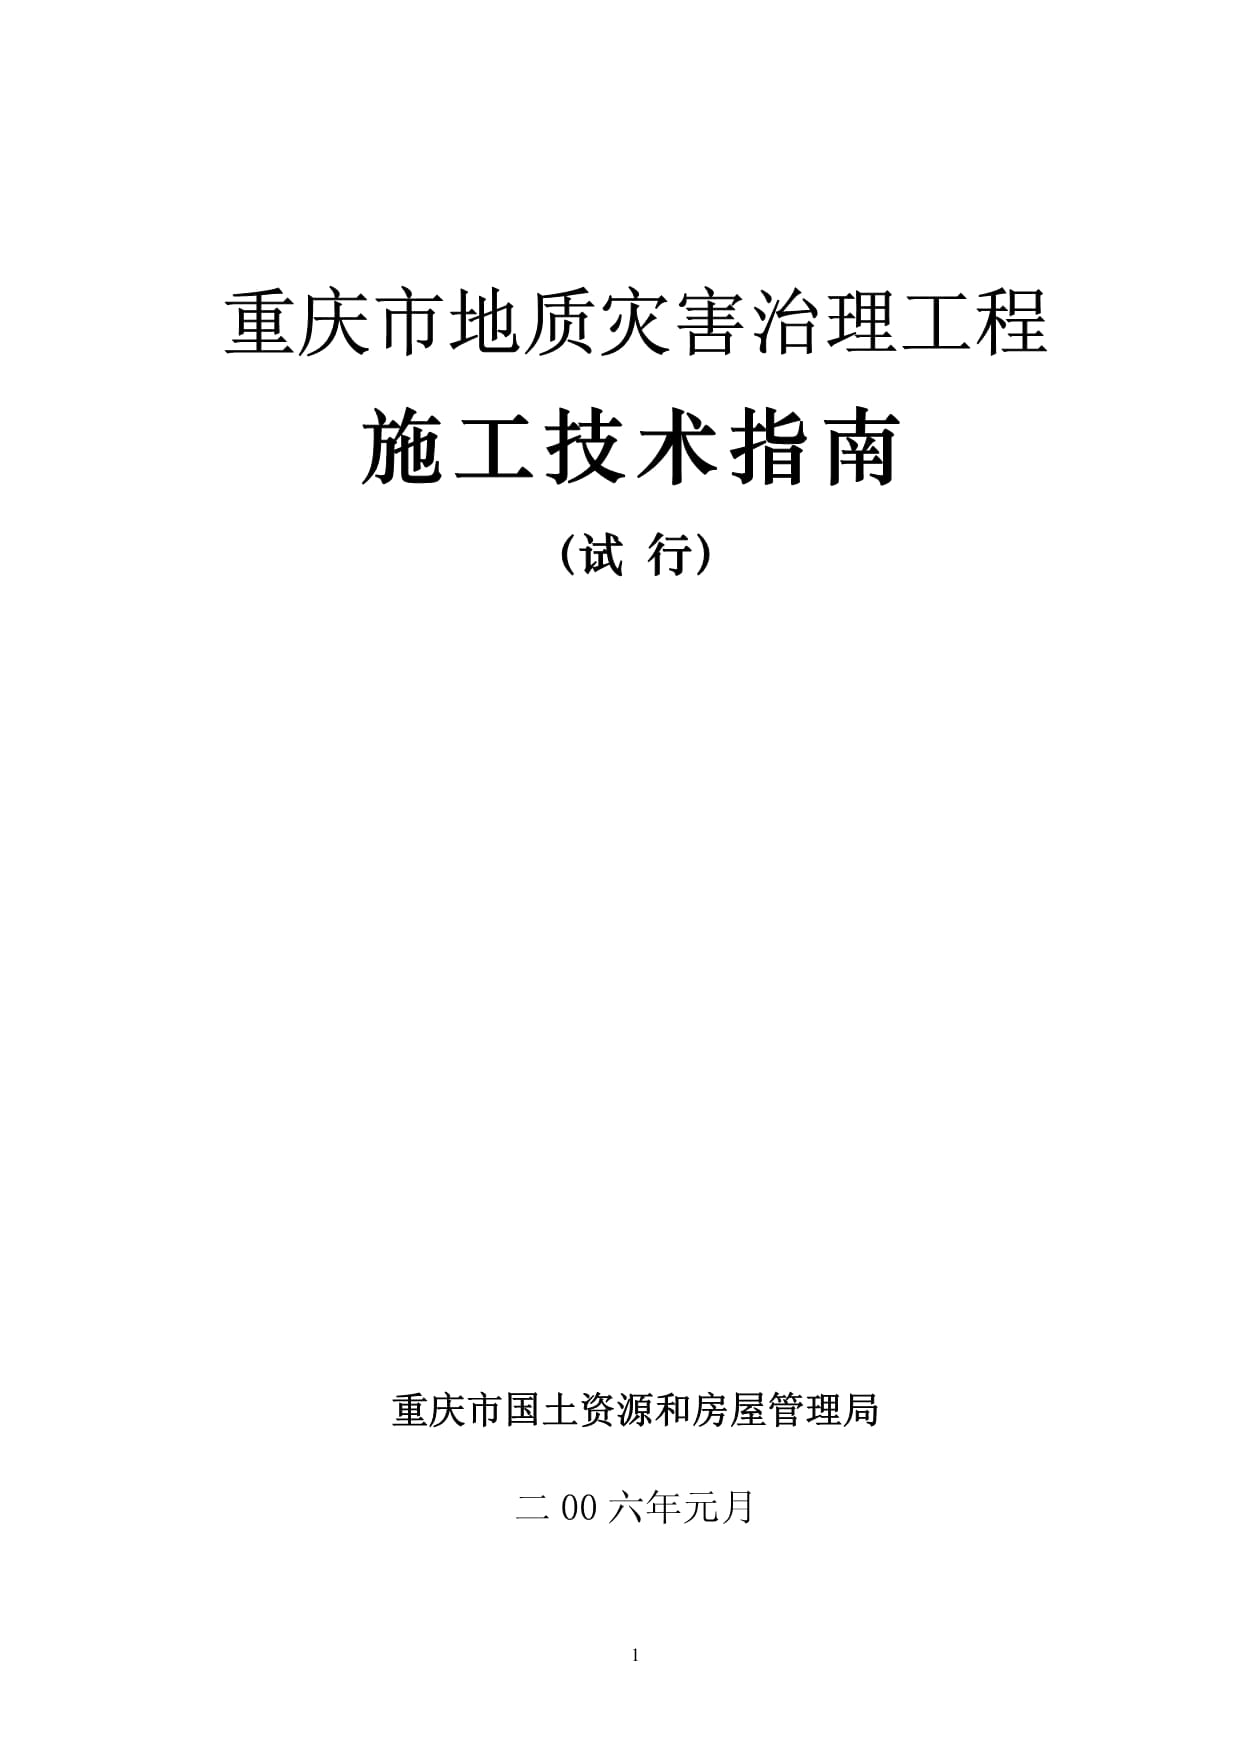 重庆市地质灾害治理工程施工技术指南